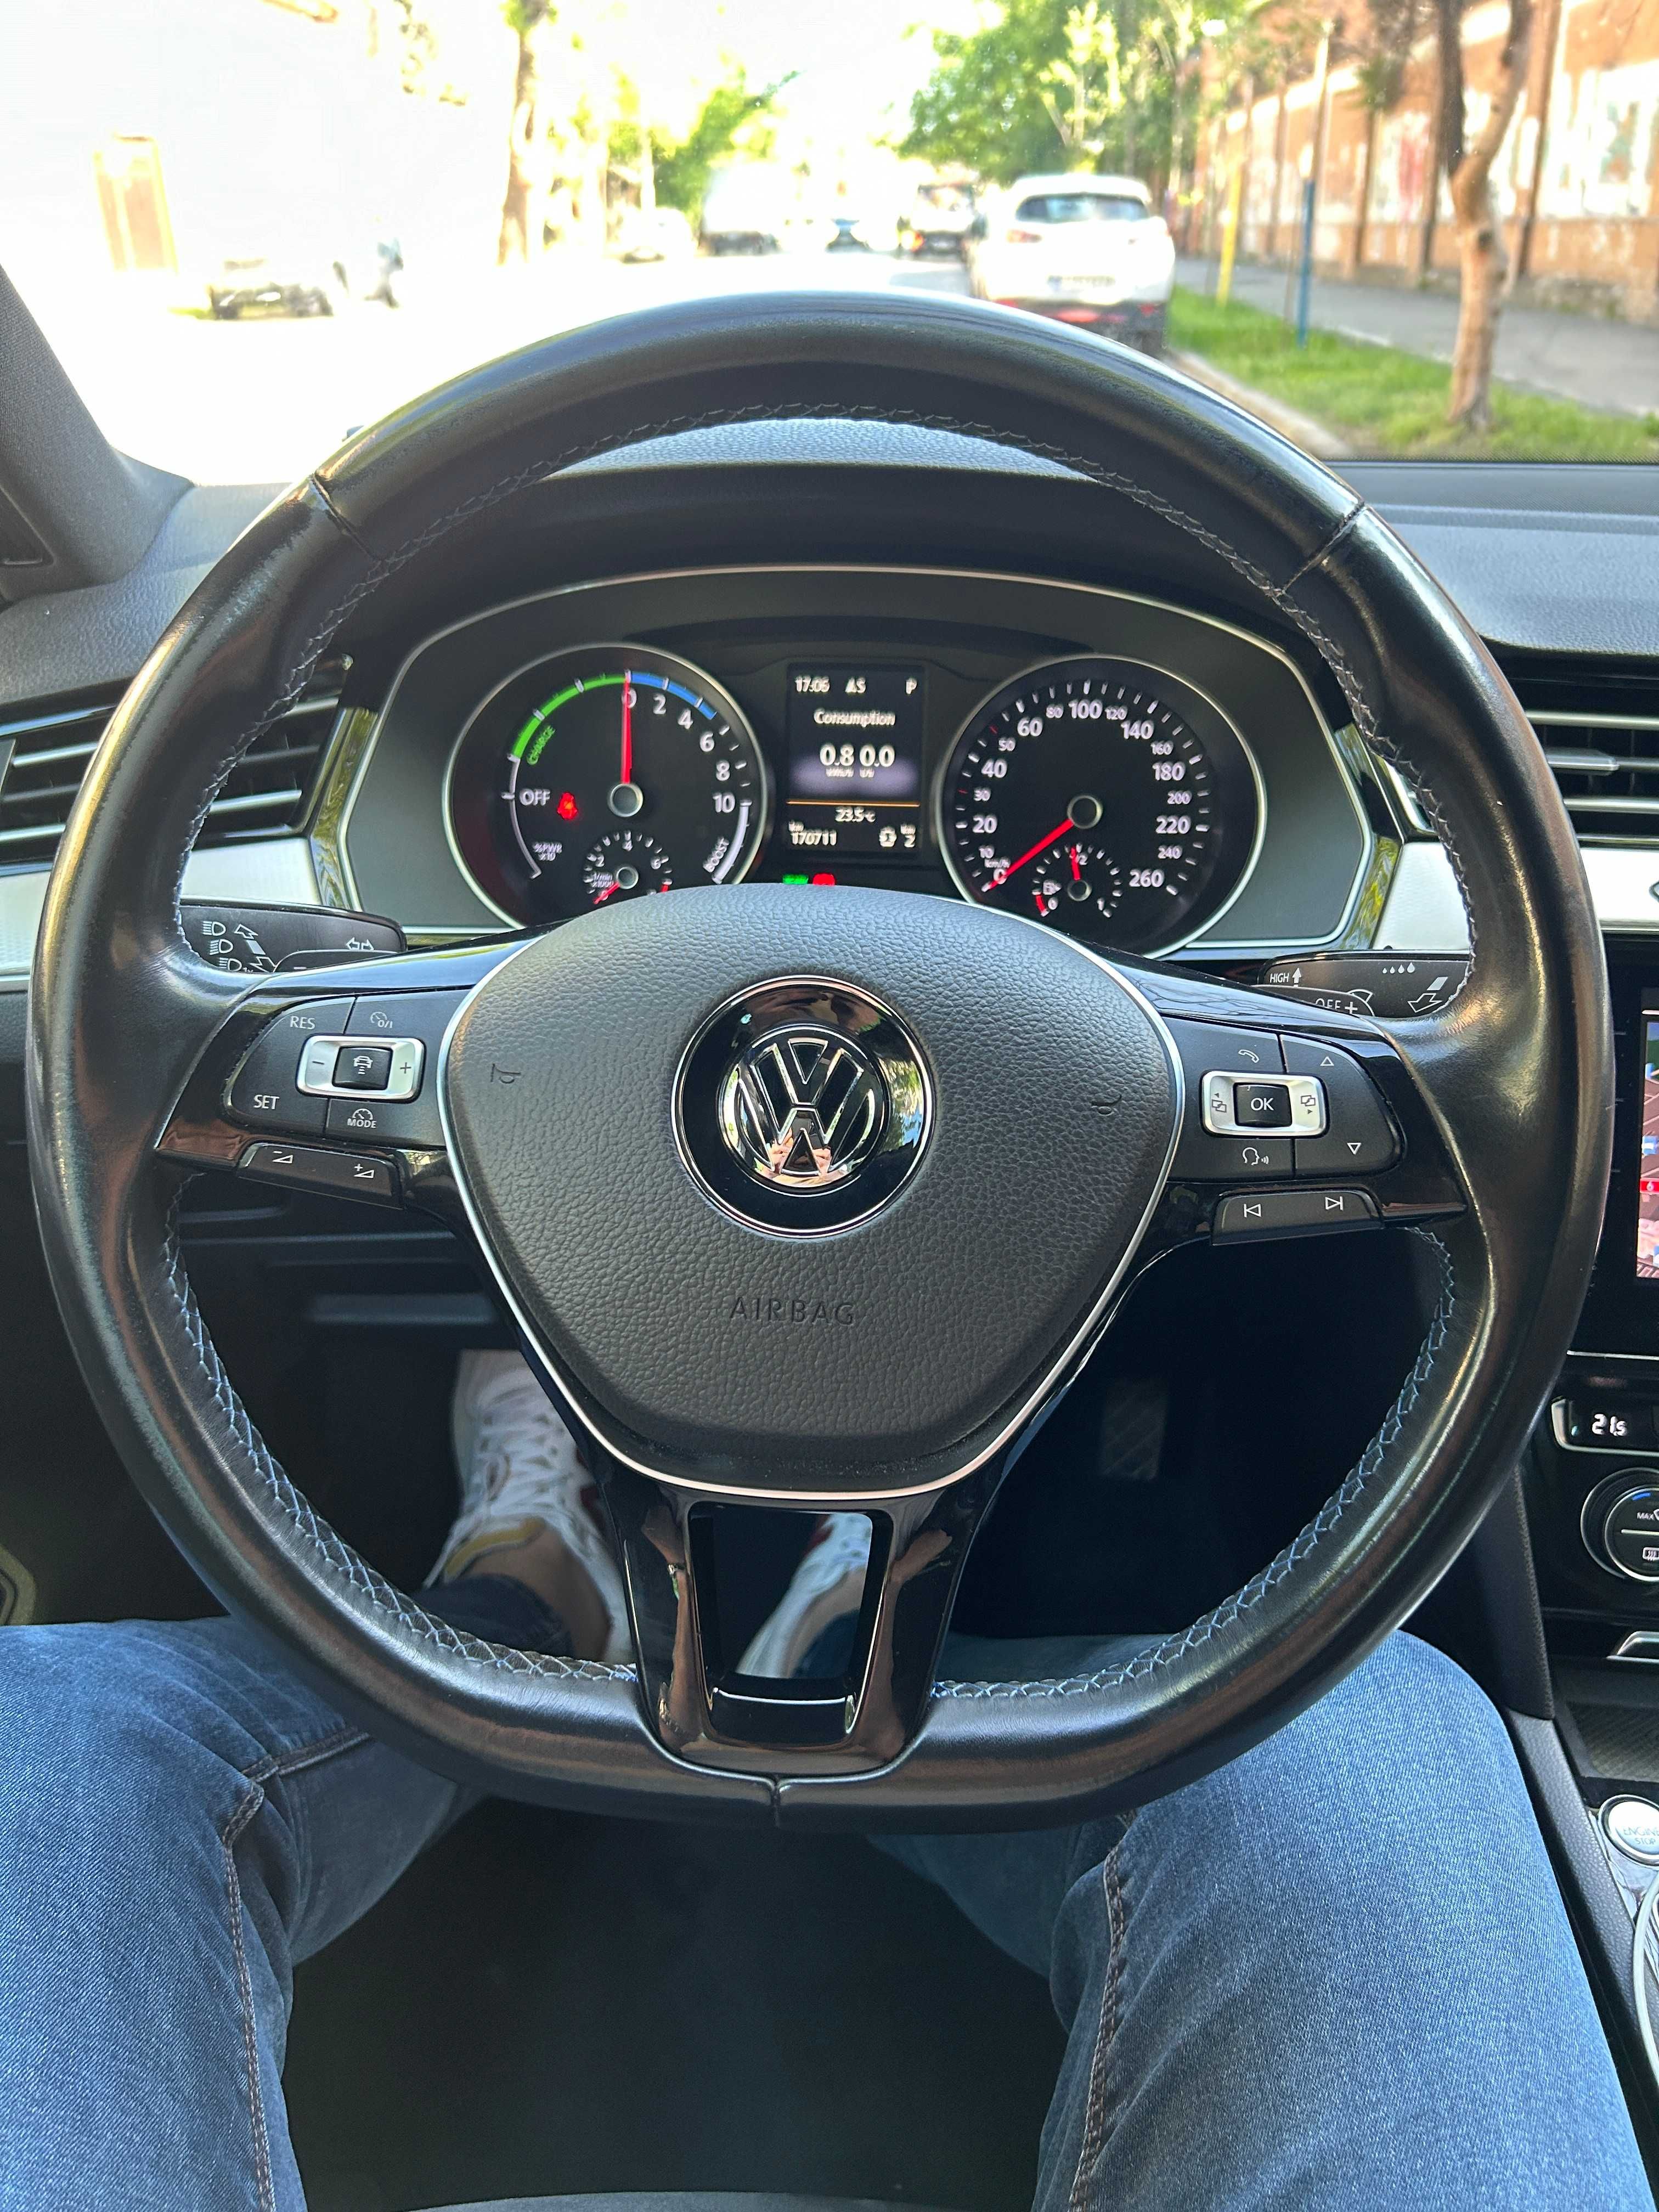 Volkswagen Passat GTE 2016 210 cp  Trapa Ambientale Navi touch